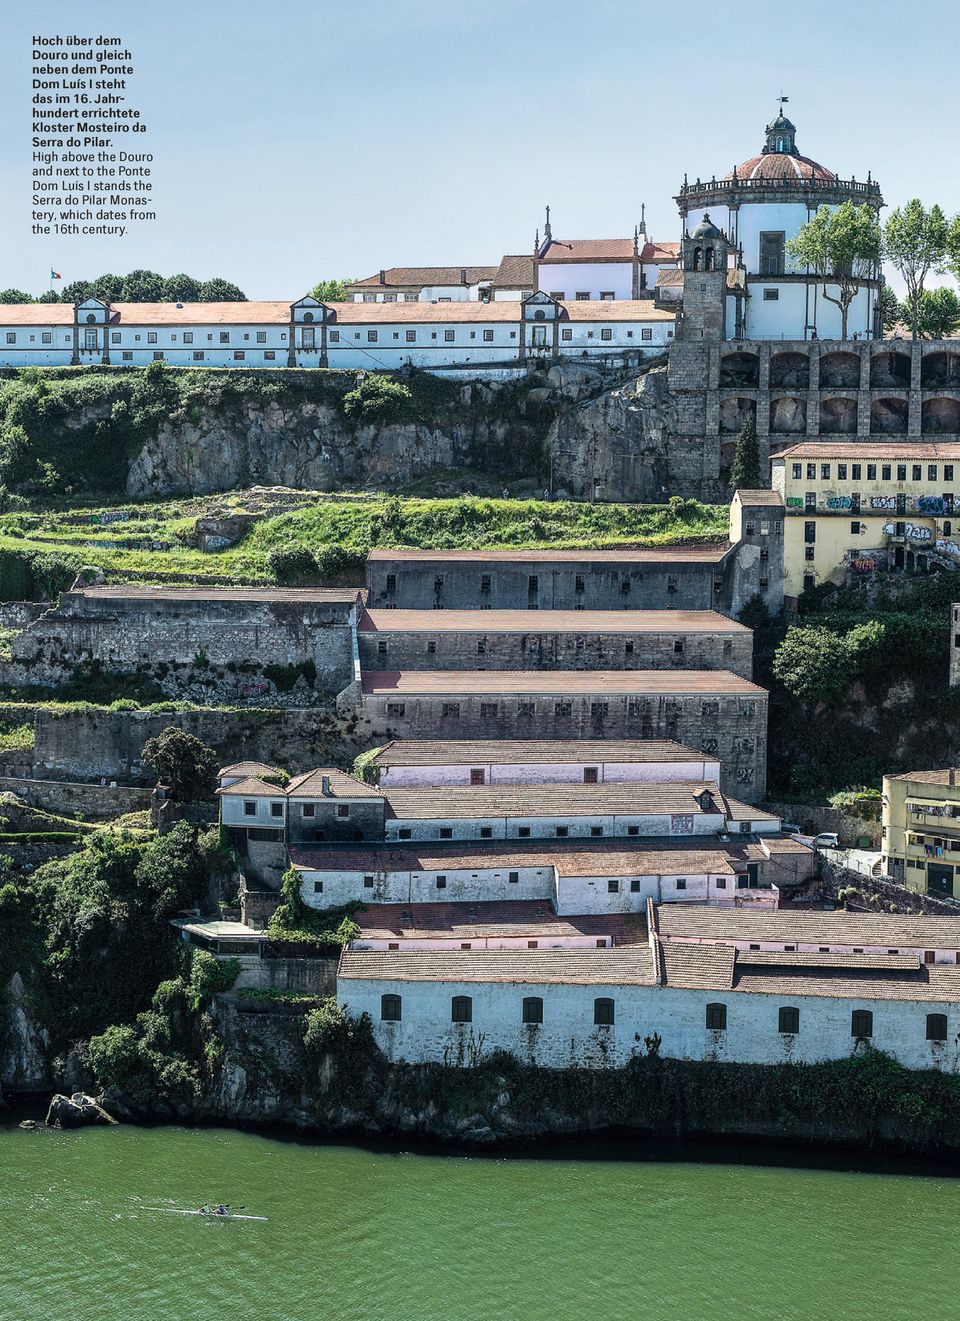 Jahr hundert errichtete Kloster Mosteiro da Serra do Pilar.